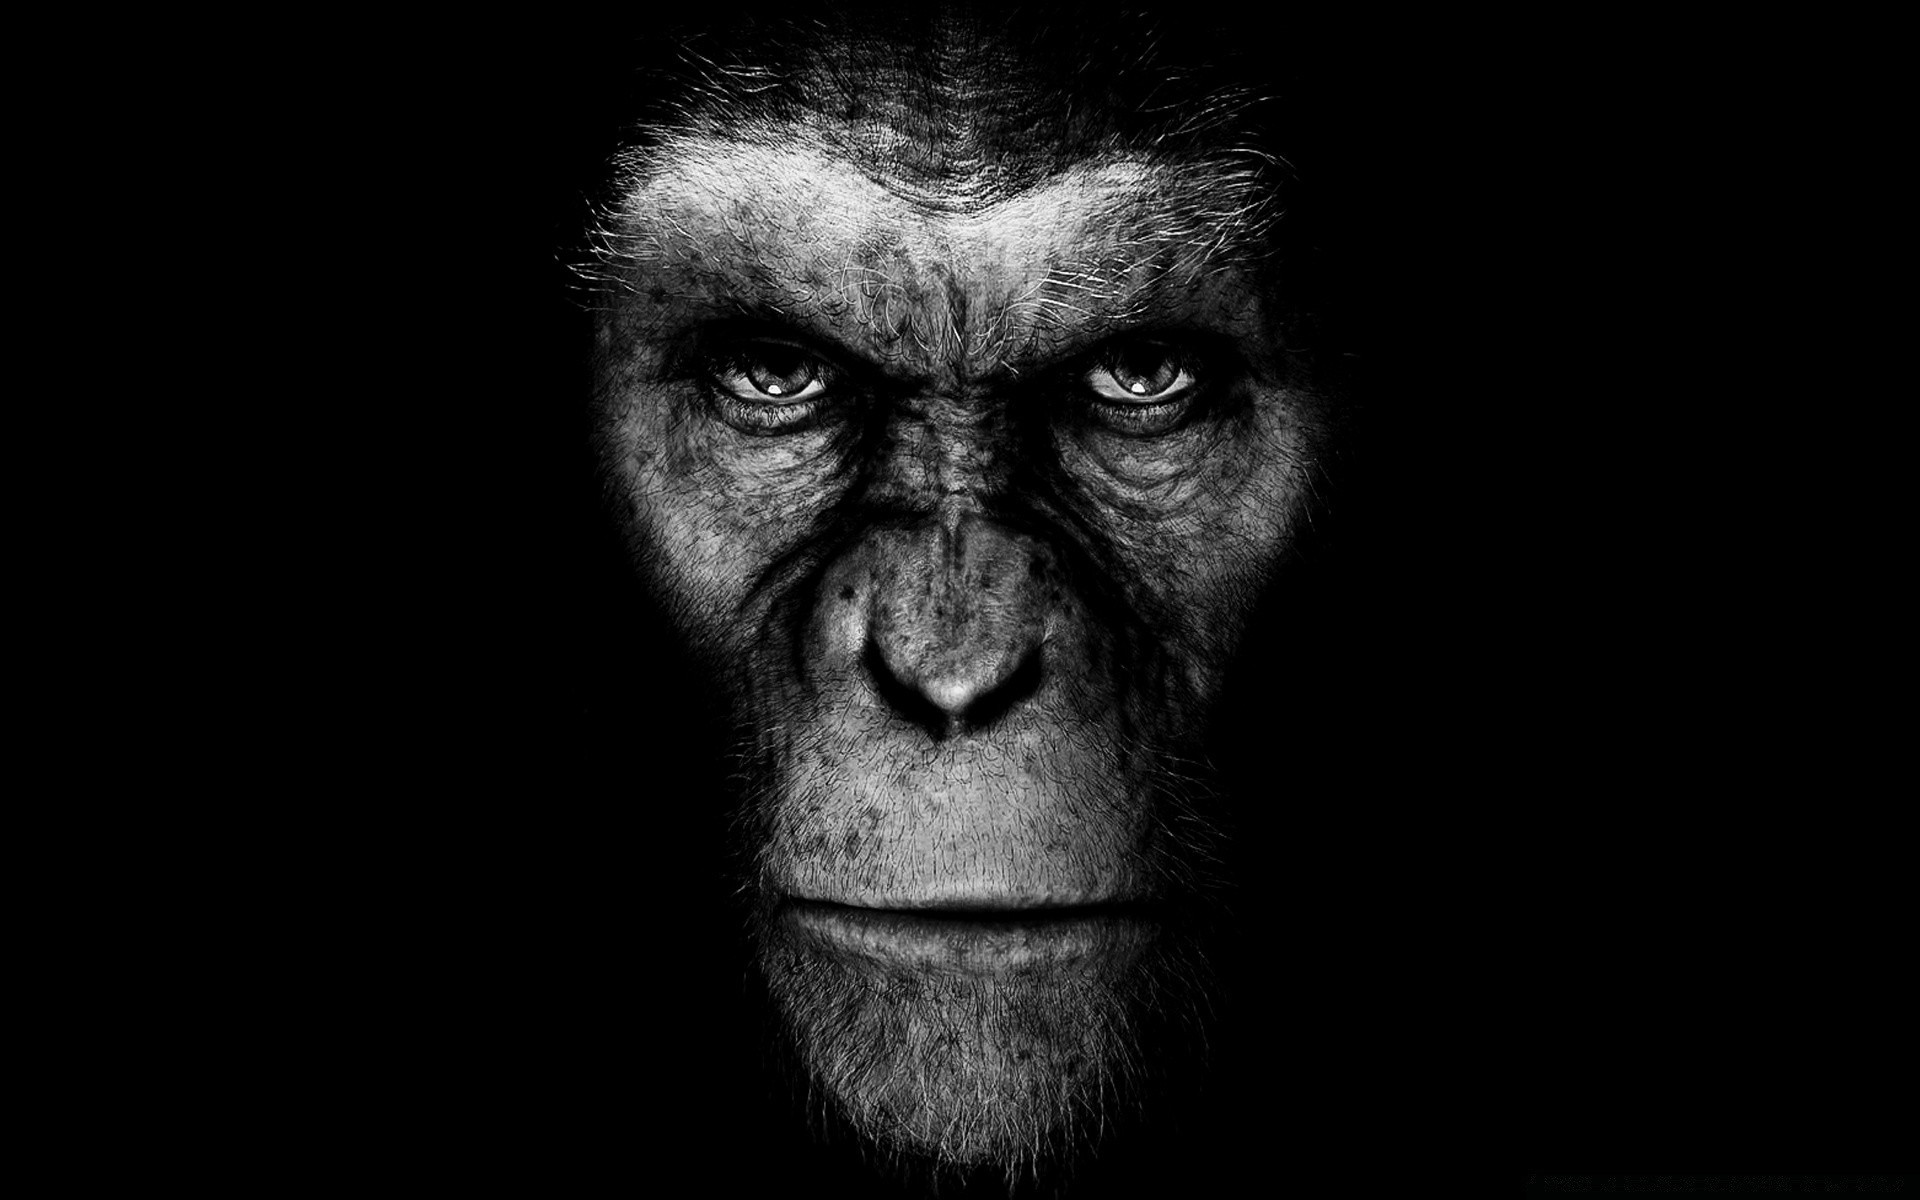 фильмы портрет монохромный один лицо предстоятель обезьяна взрослый черный и белый человек